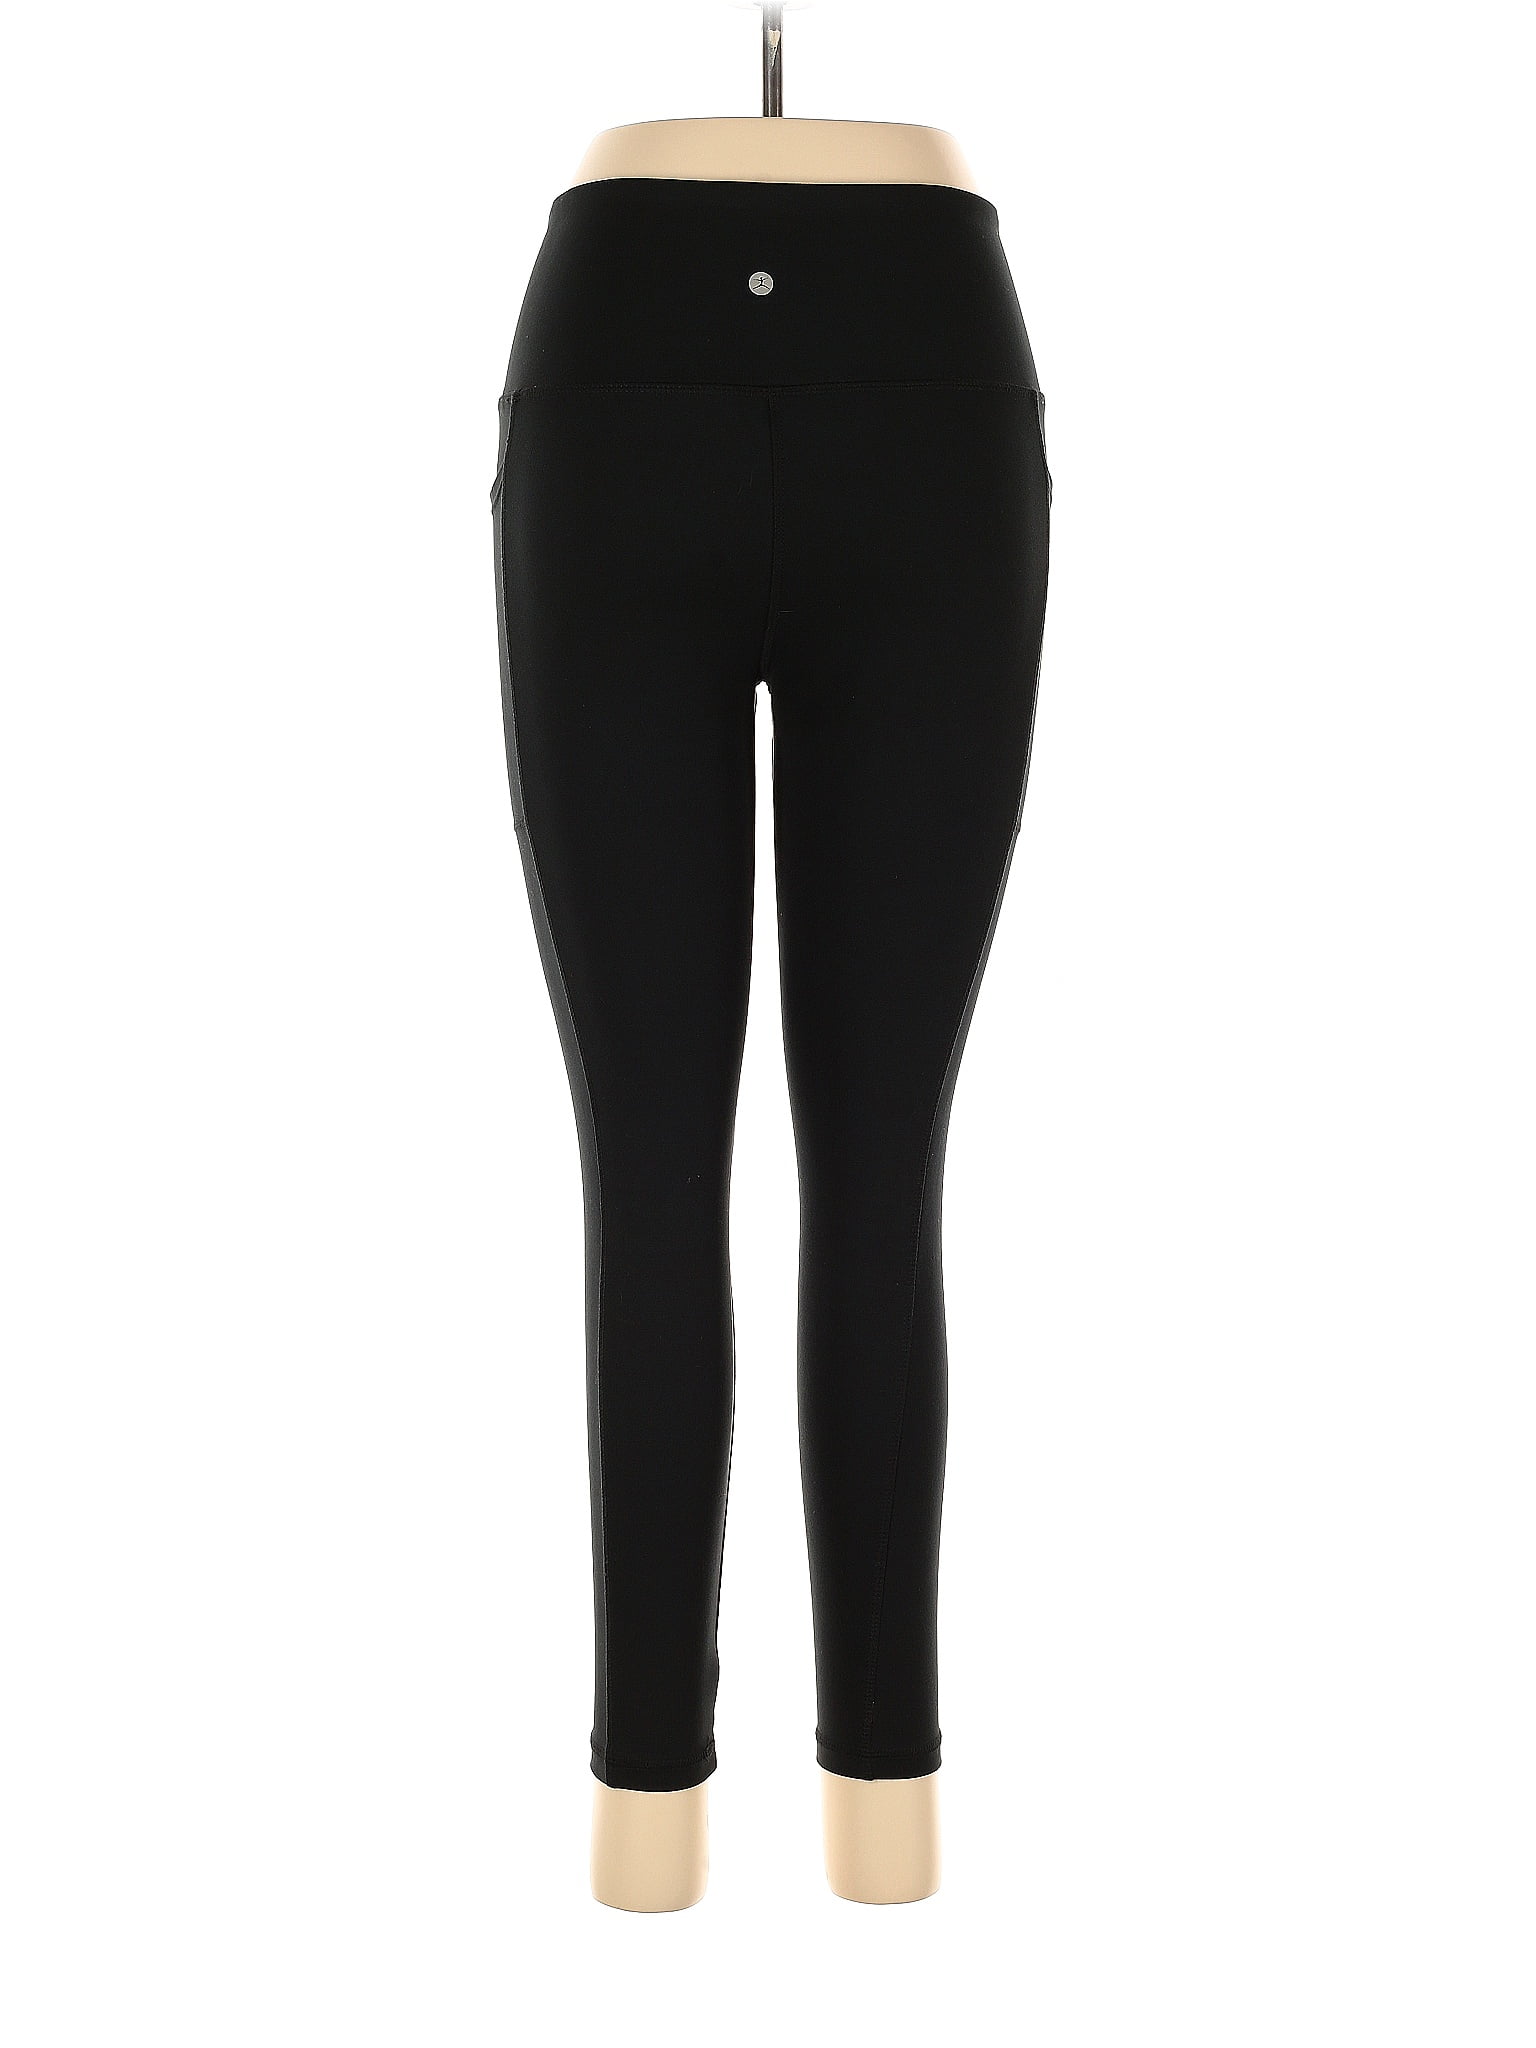 Danskin Black Active Pants Size XL - 51% off